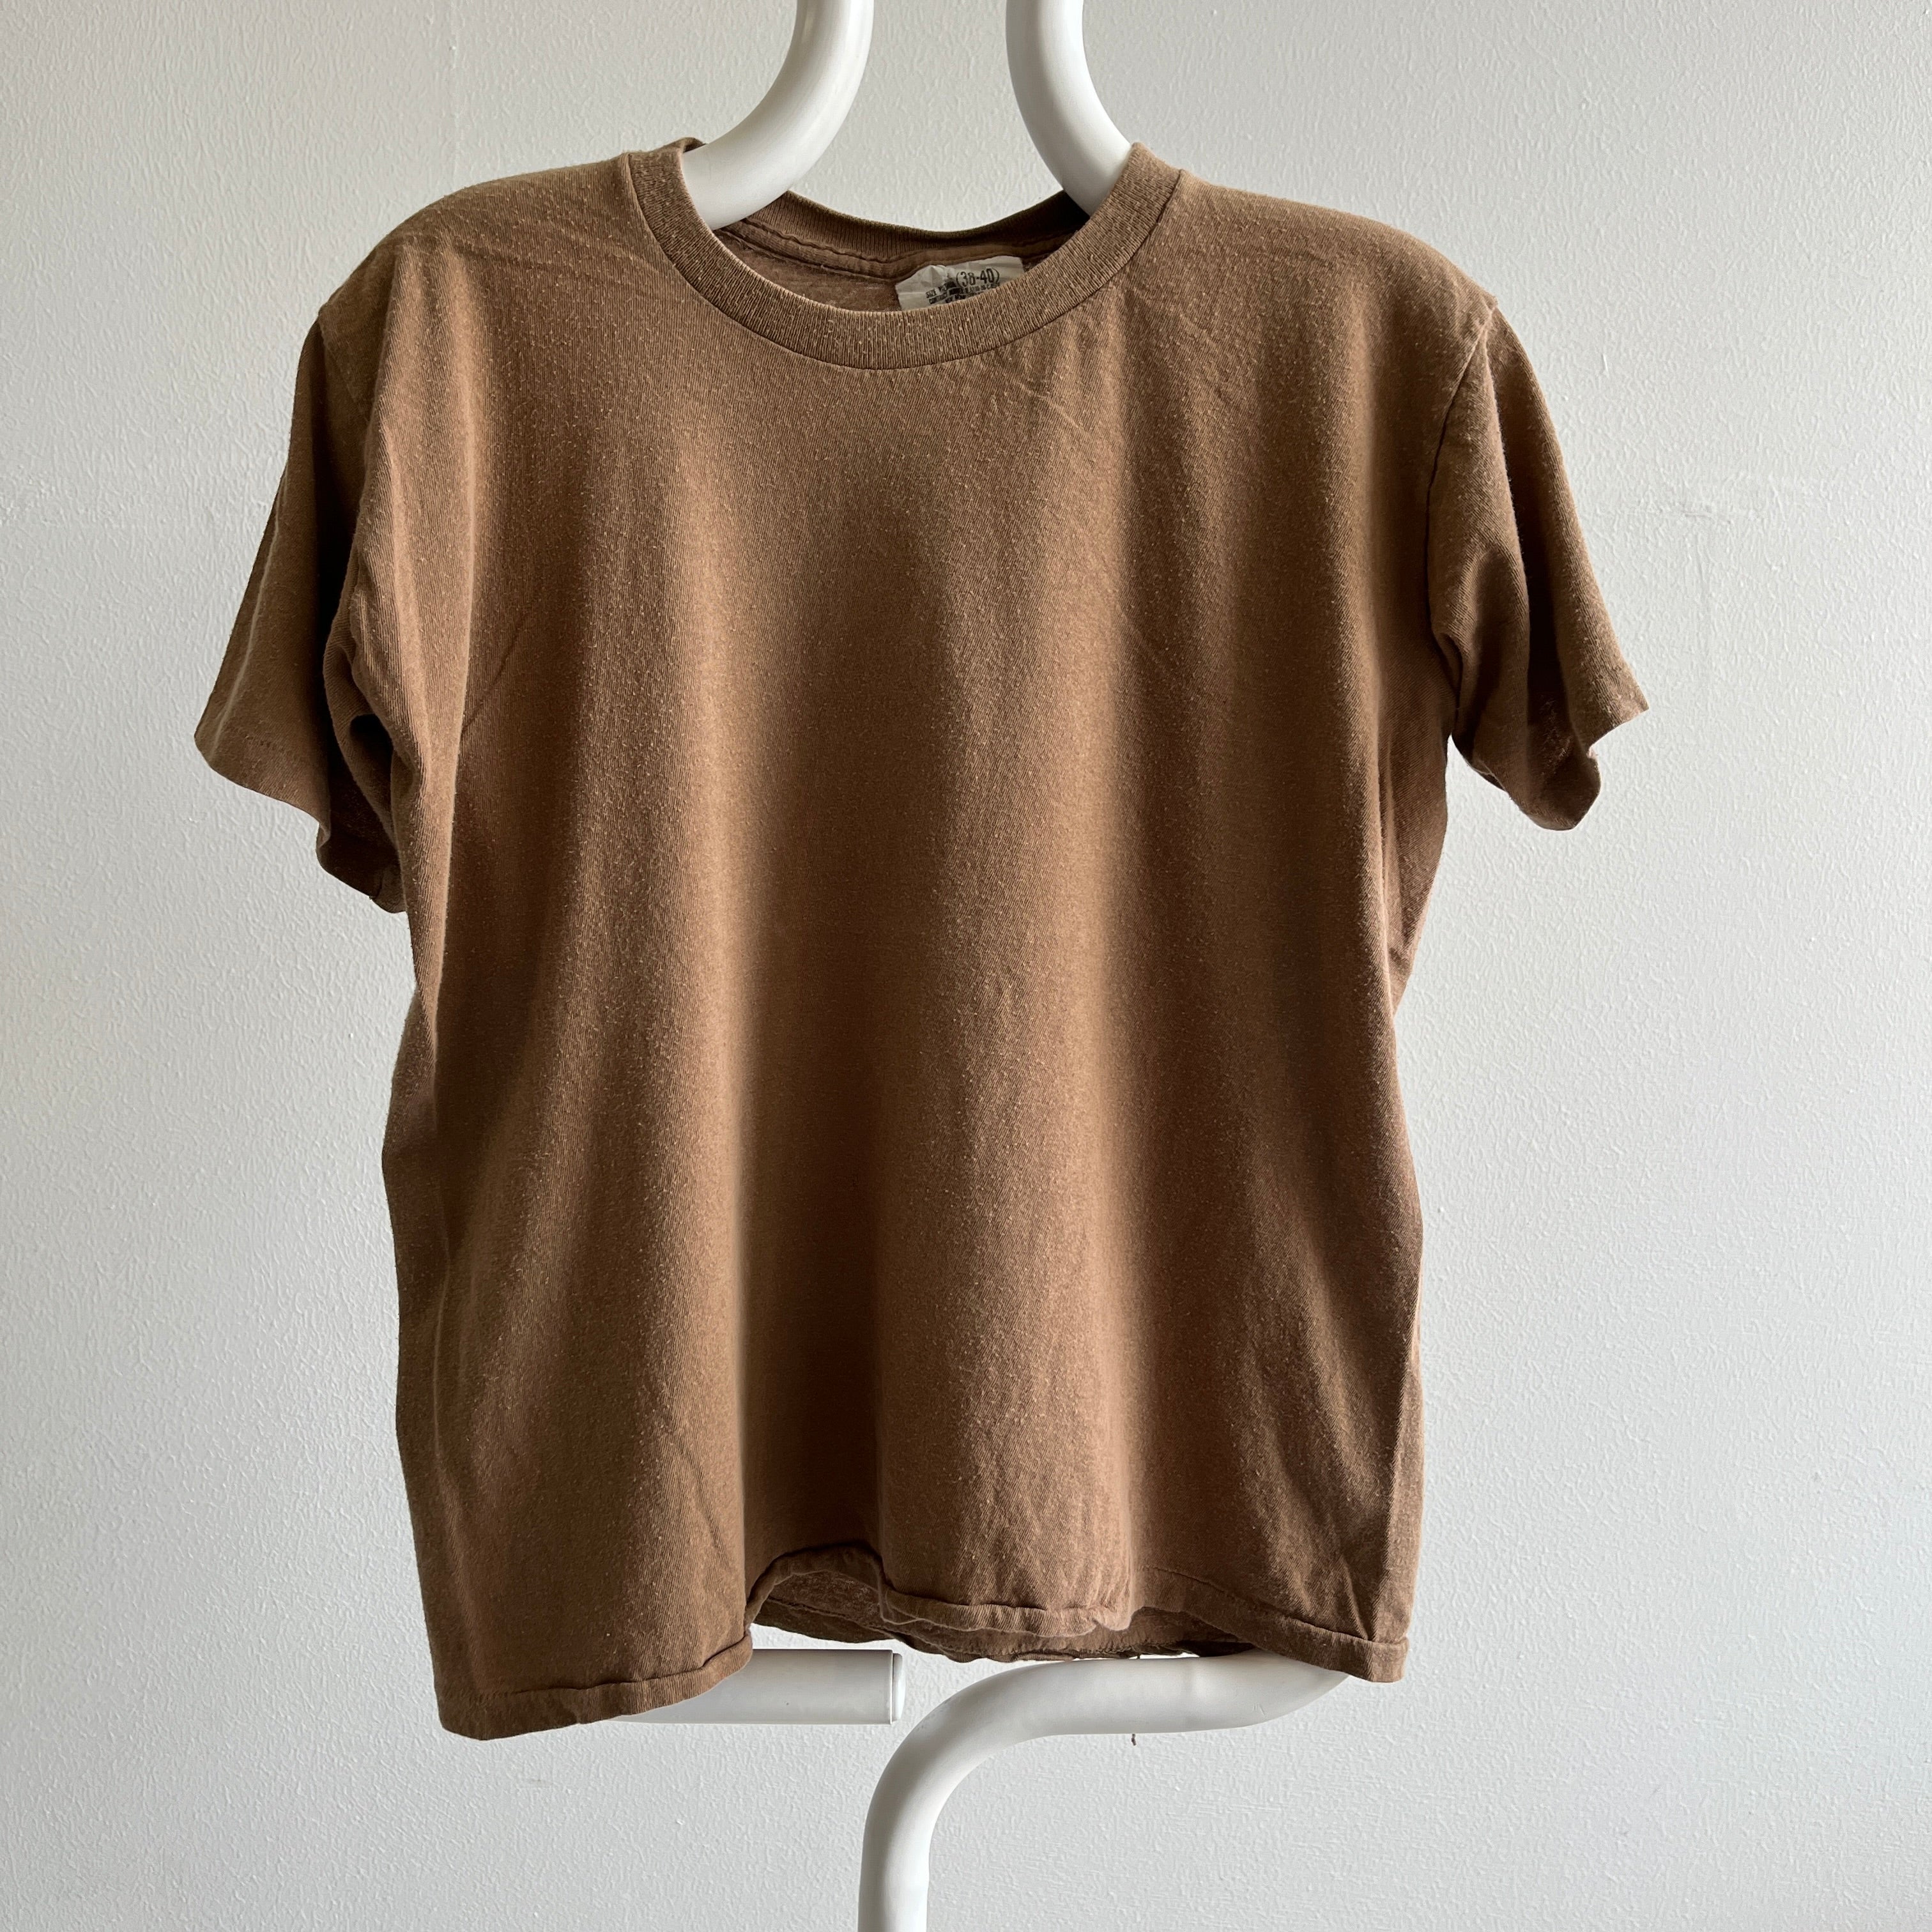 T-shirt super doux marron vierge des années 1980 de l'armée